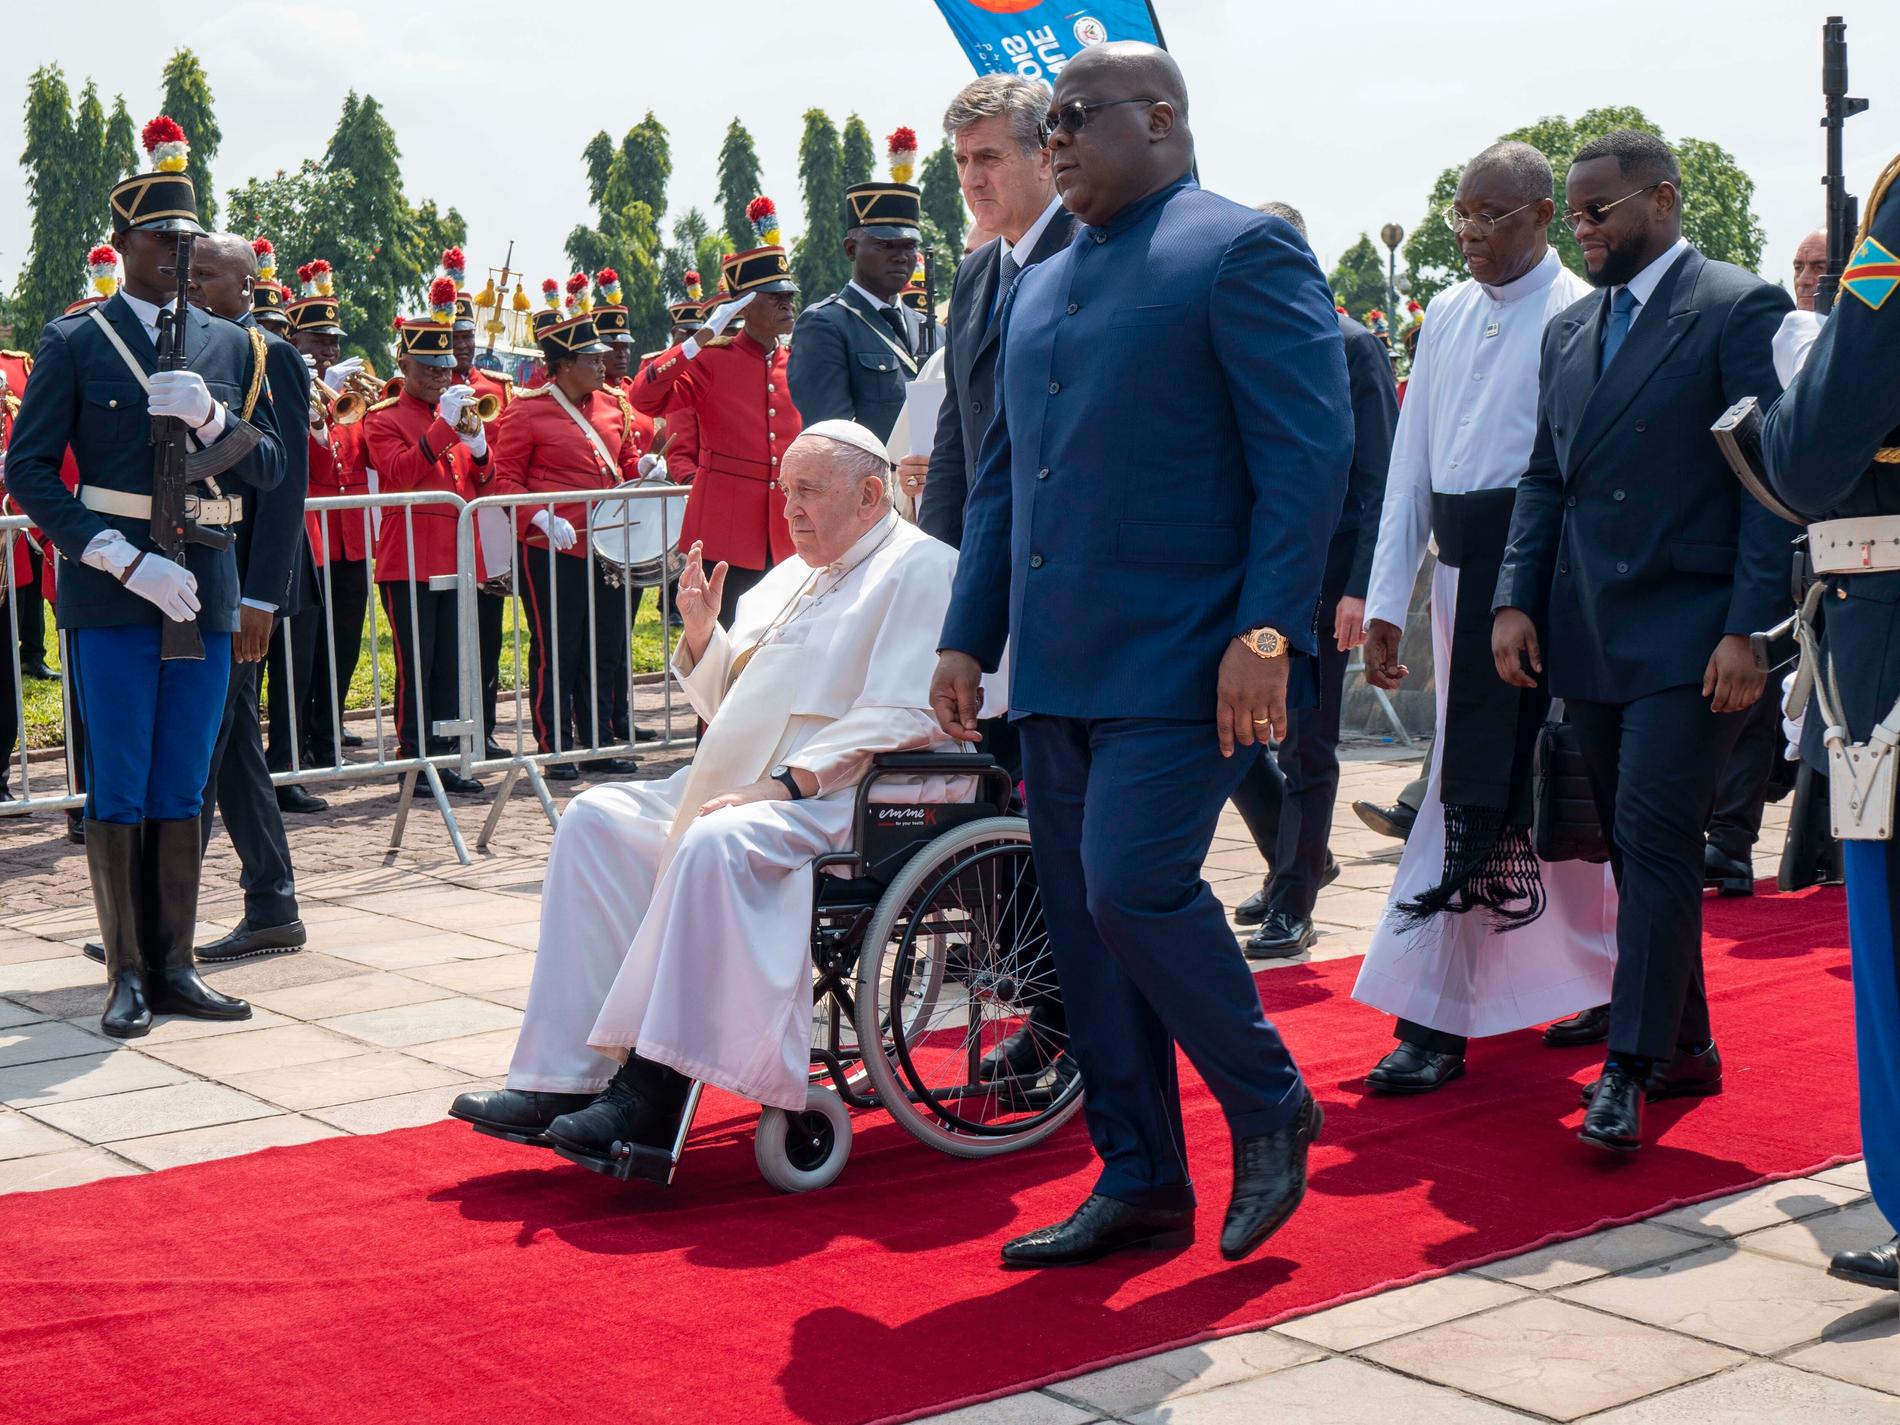 Många dödade inför påvens besök i Sydsudan